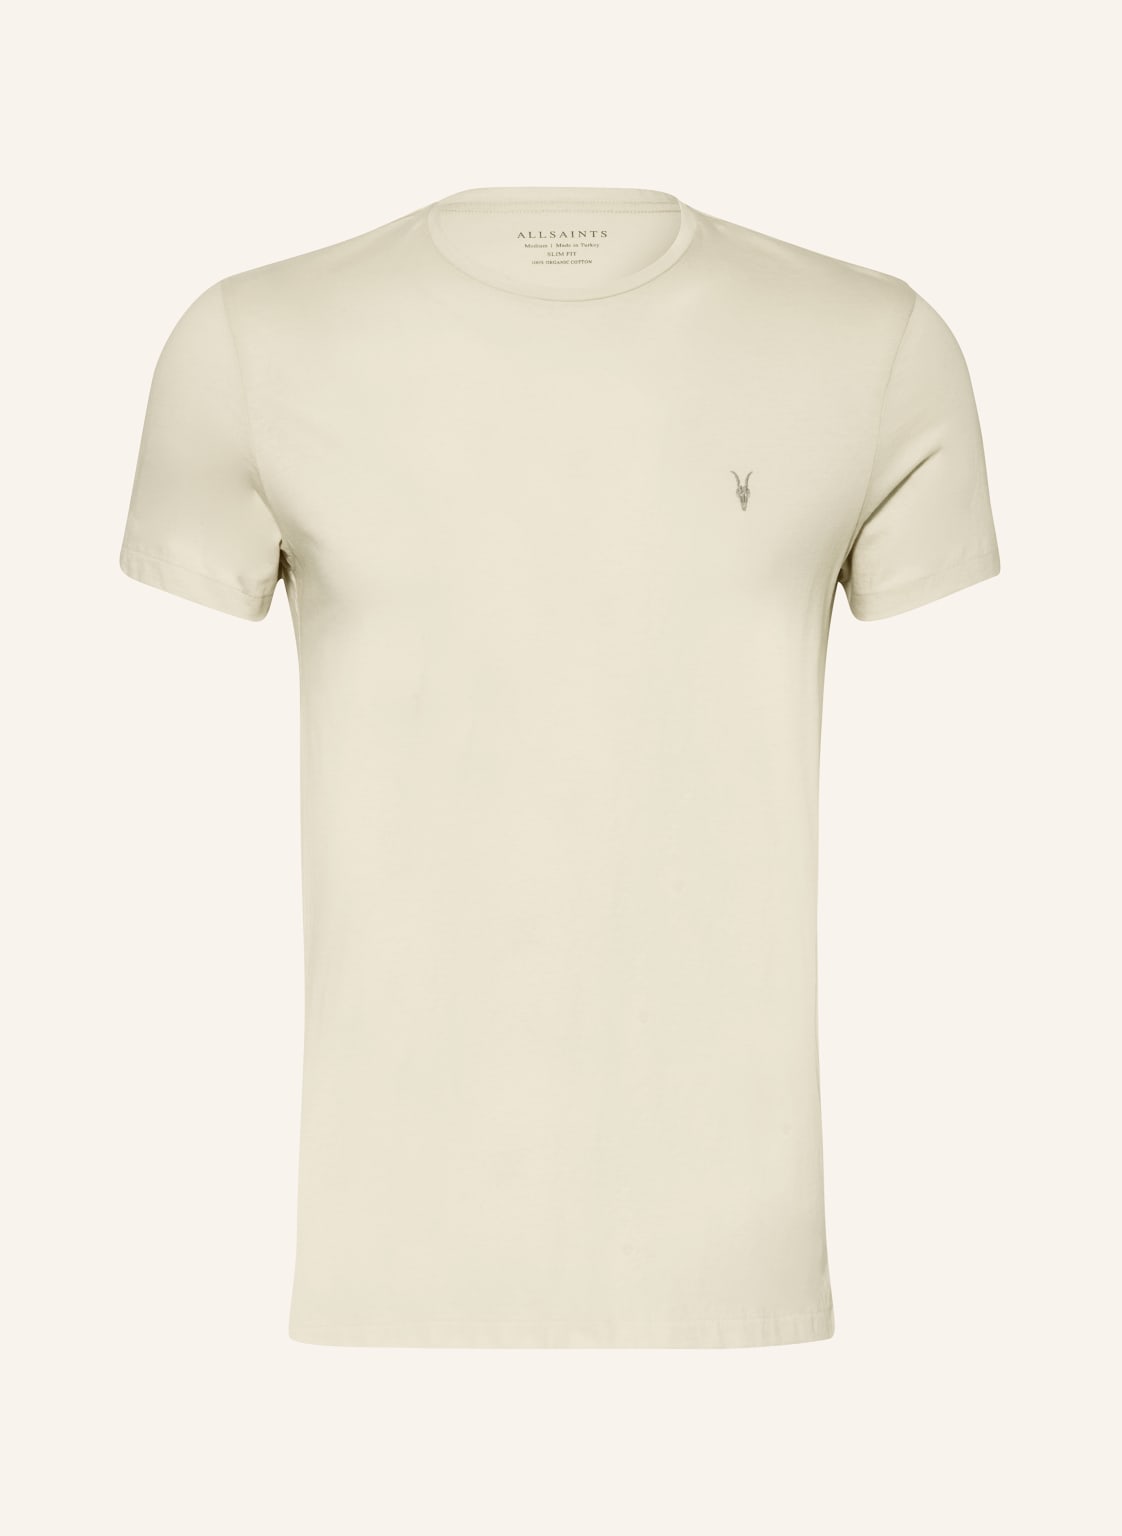 Allsaints T-Shirt Tonic beige von AllSaints